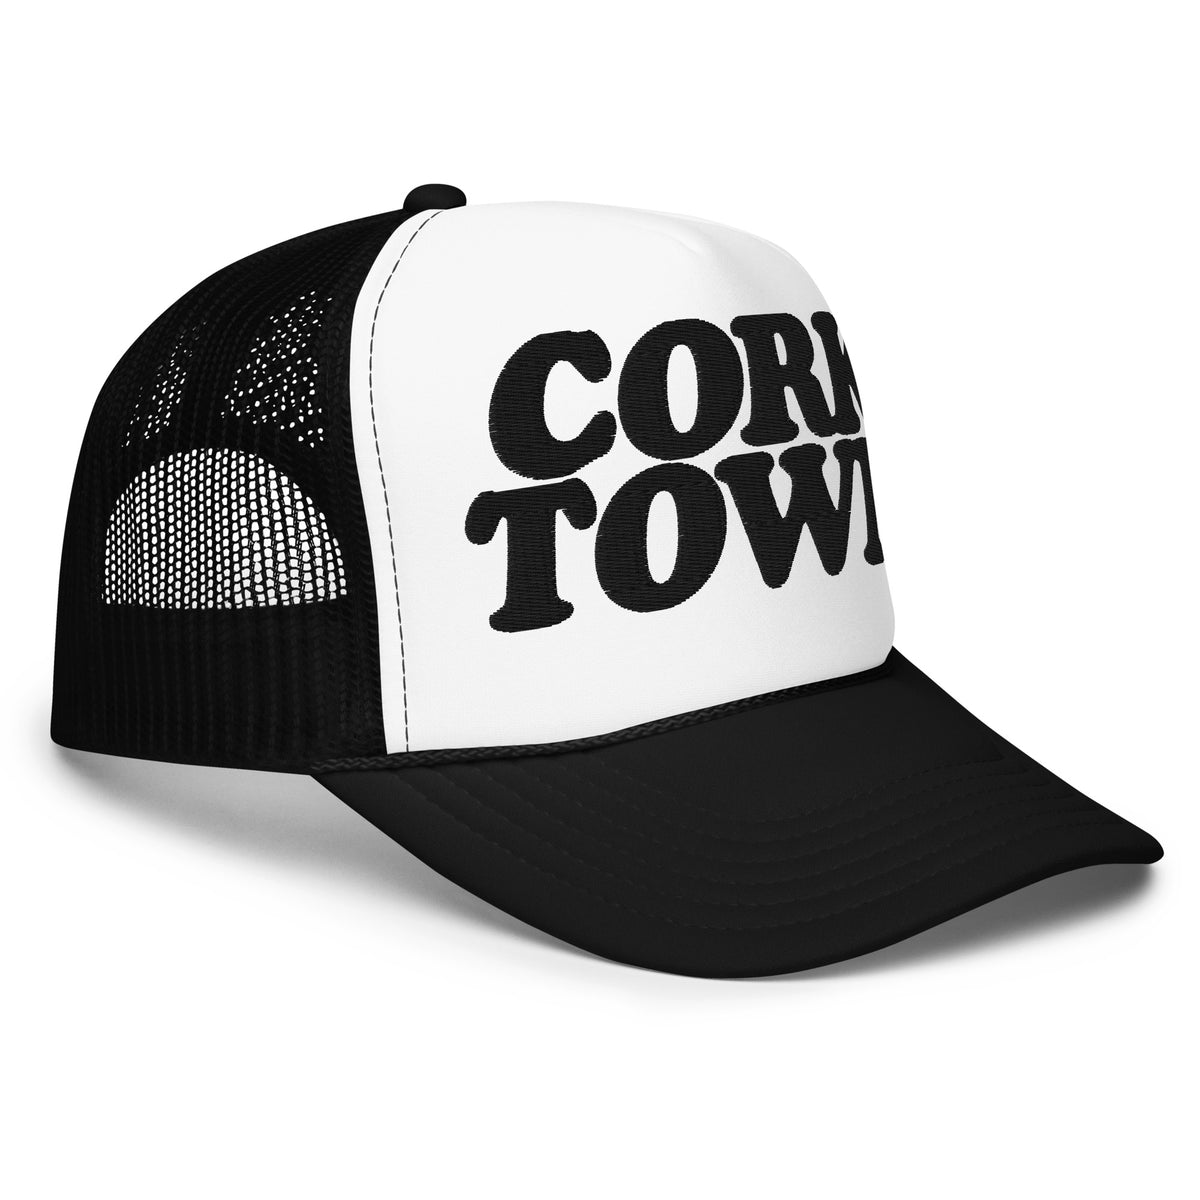 Corktown Foam Trucker Hat - Embroidered - Black / White    